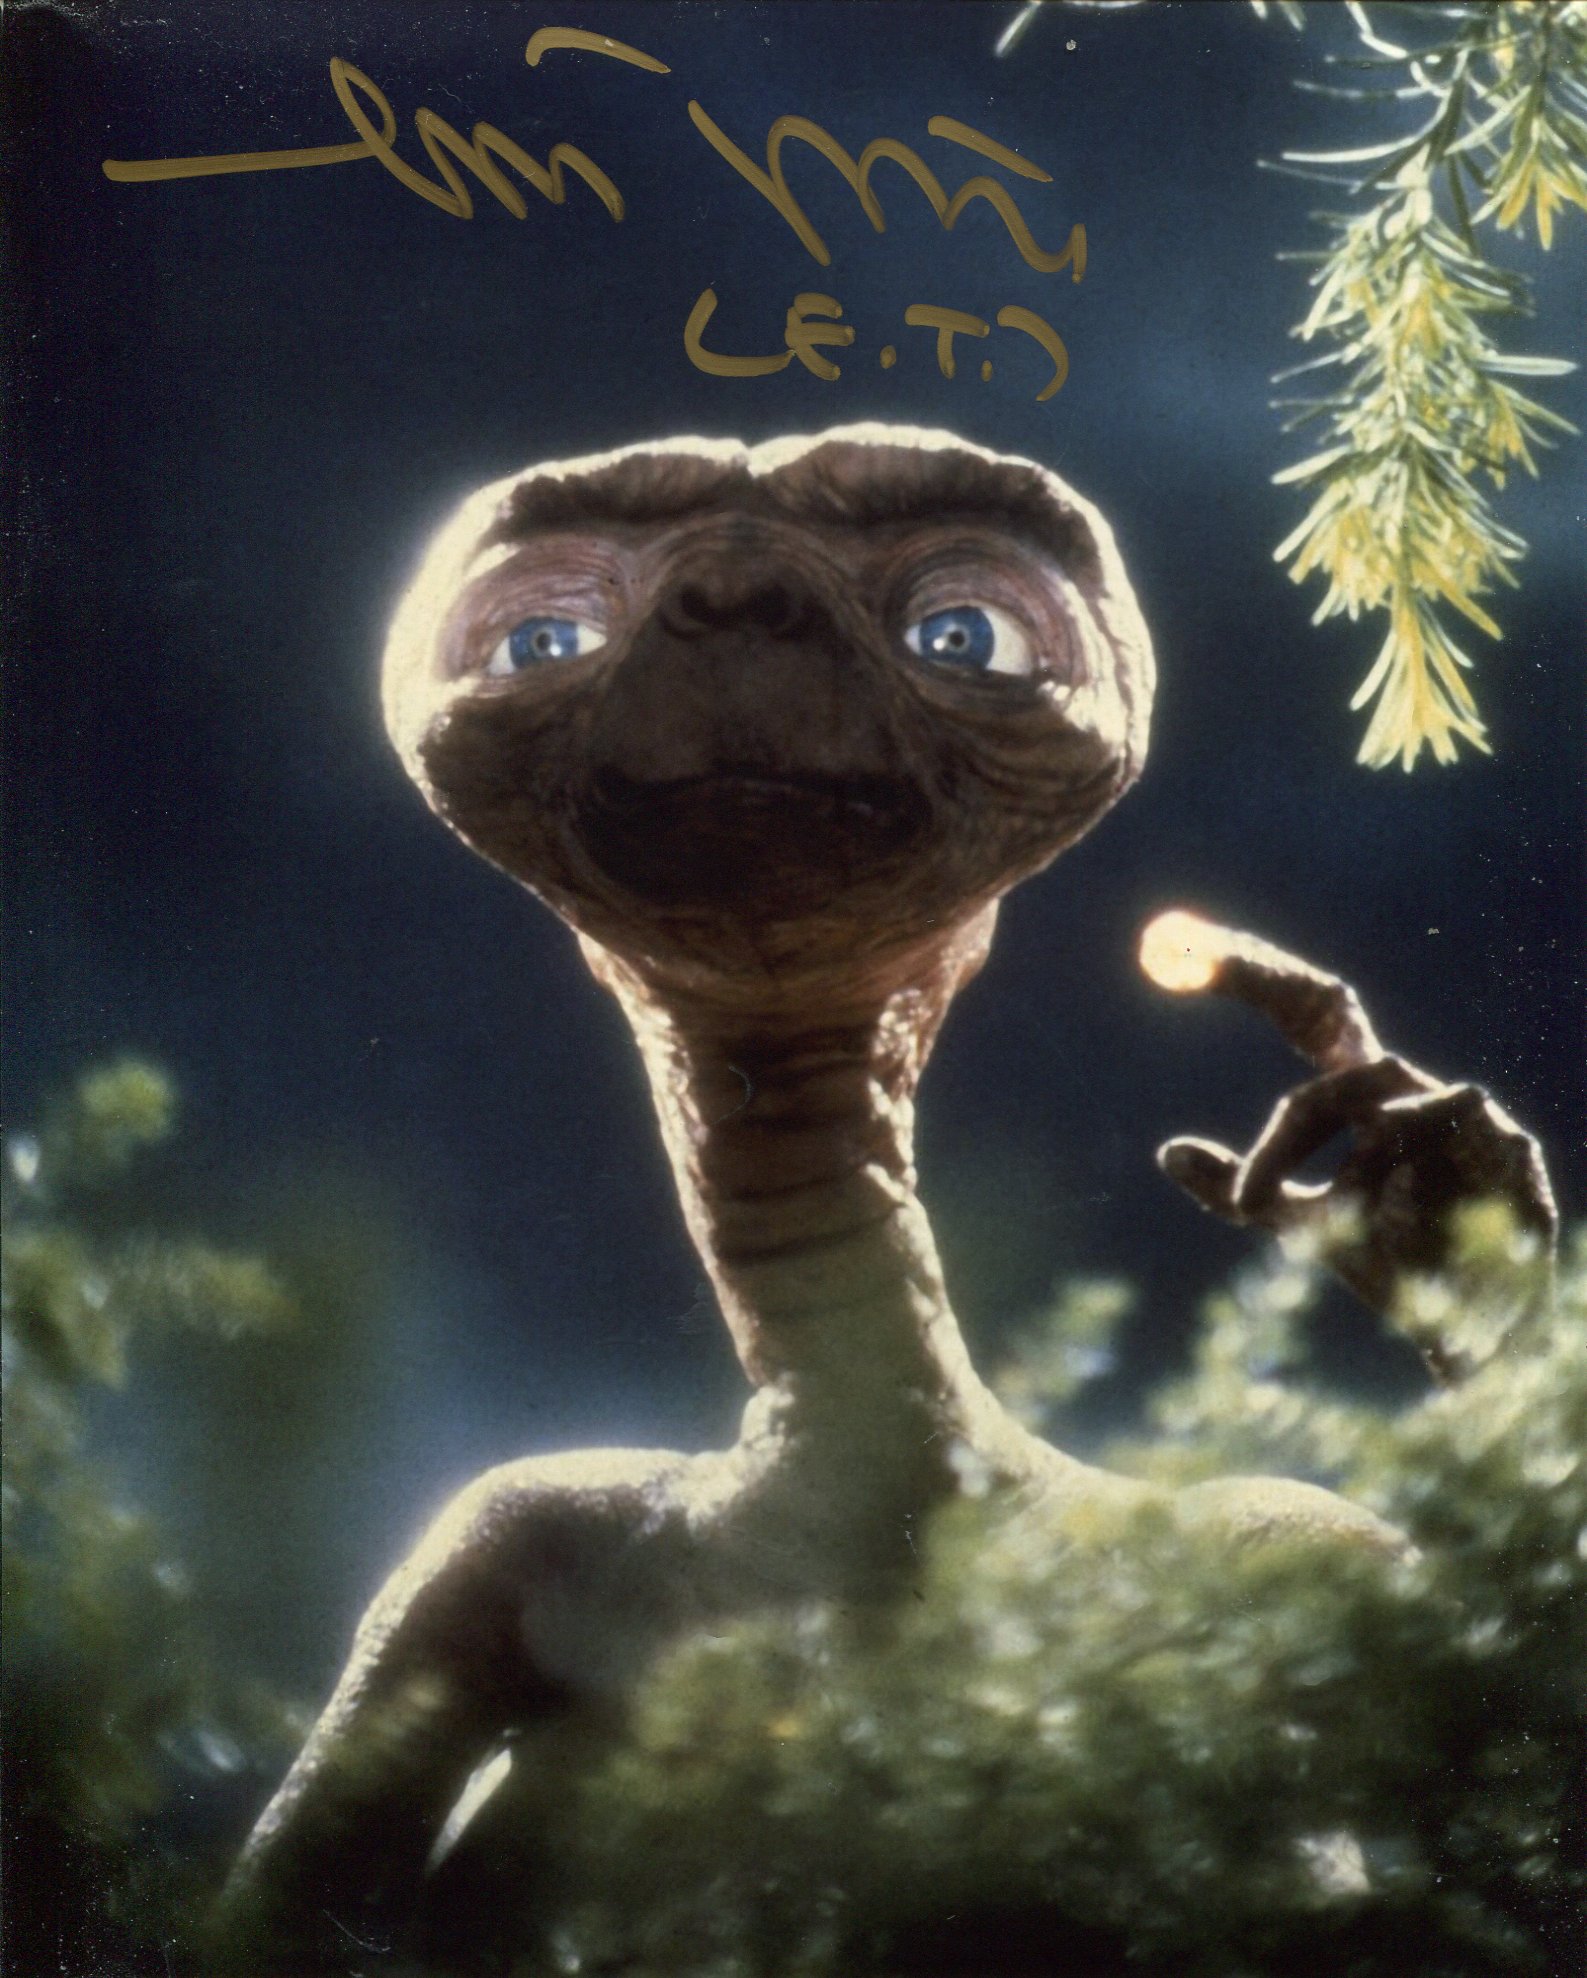 E.T The Extra Terrestrial, stunning 8x10 photo signed by E.T himself, Matthew De Meritt. Good